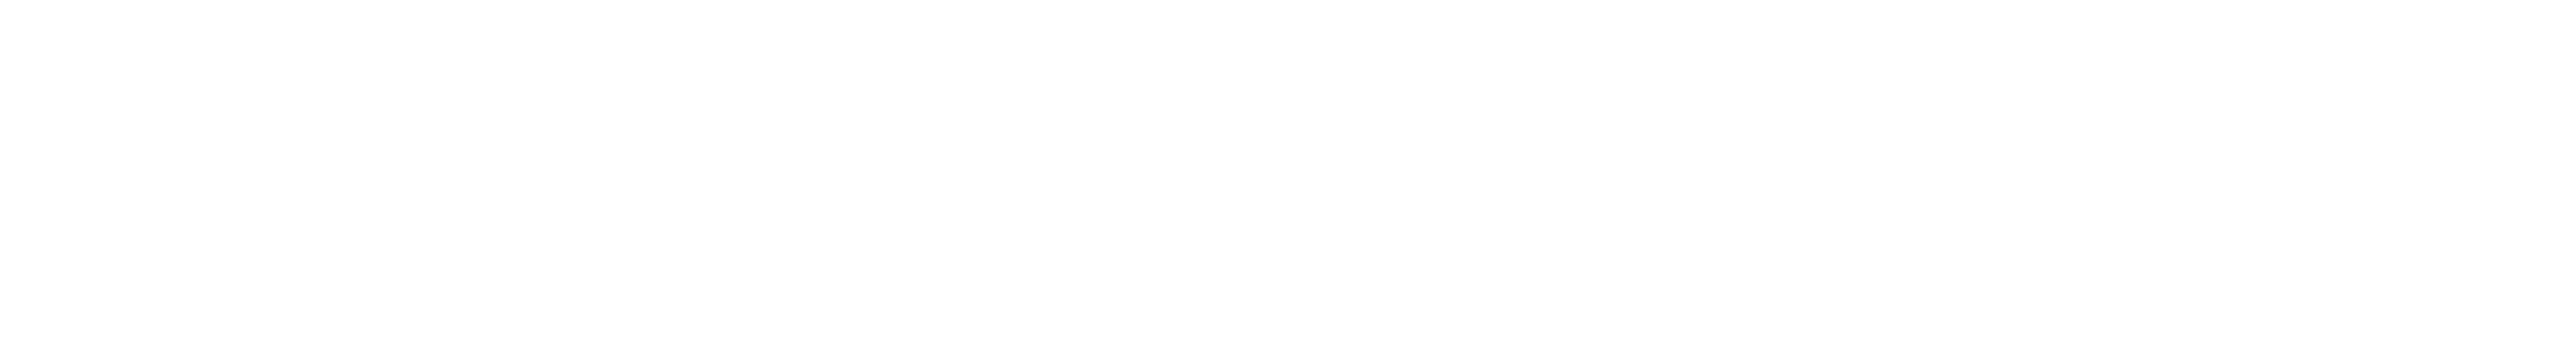 Fill-Rite Logo